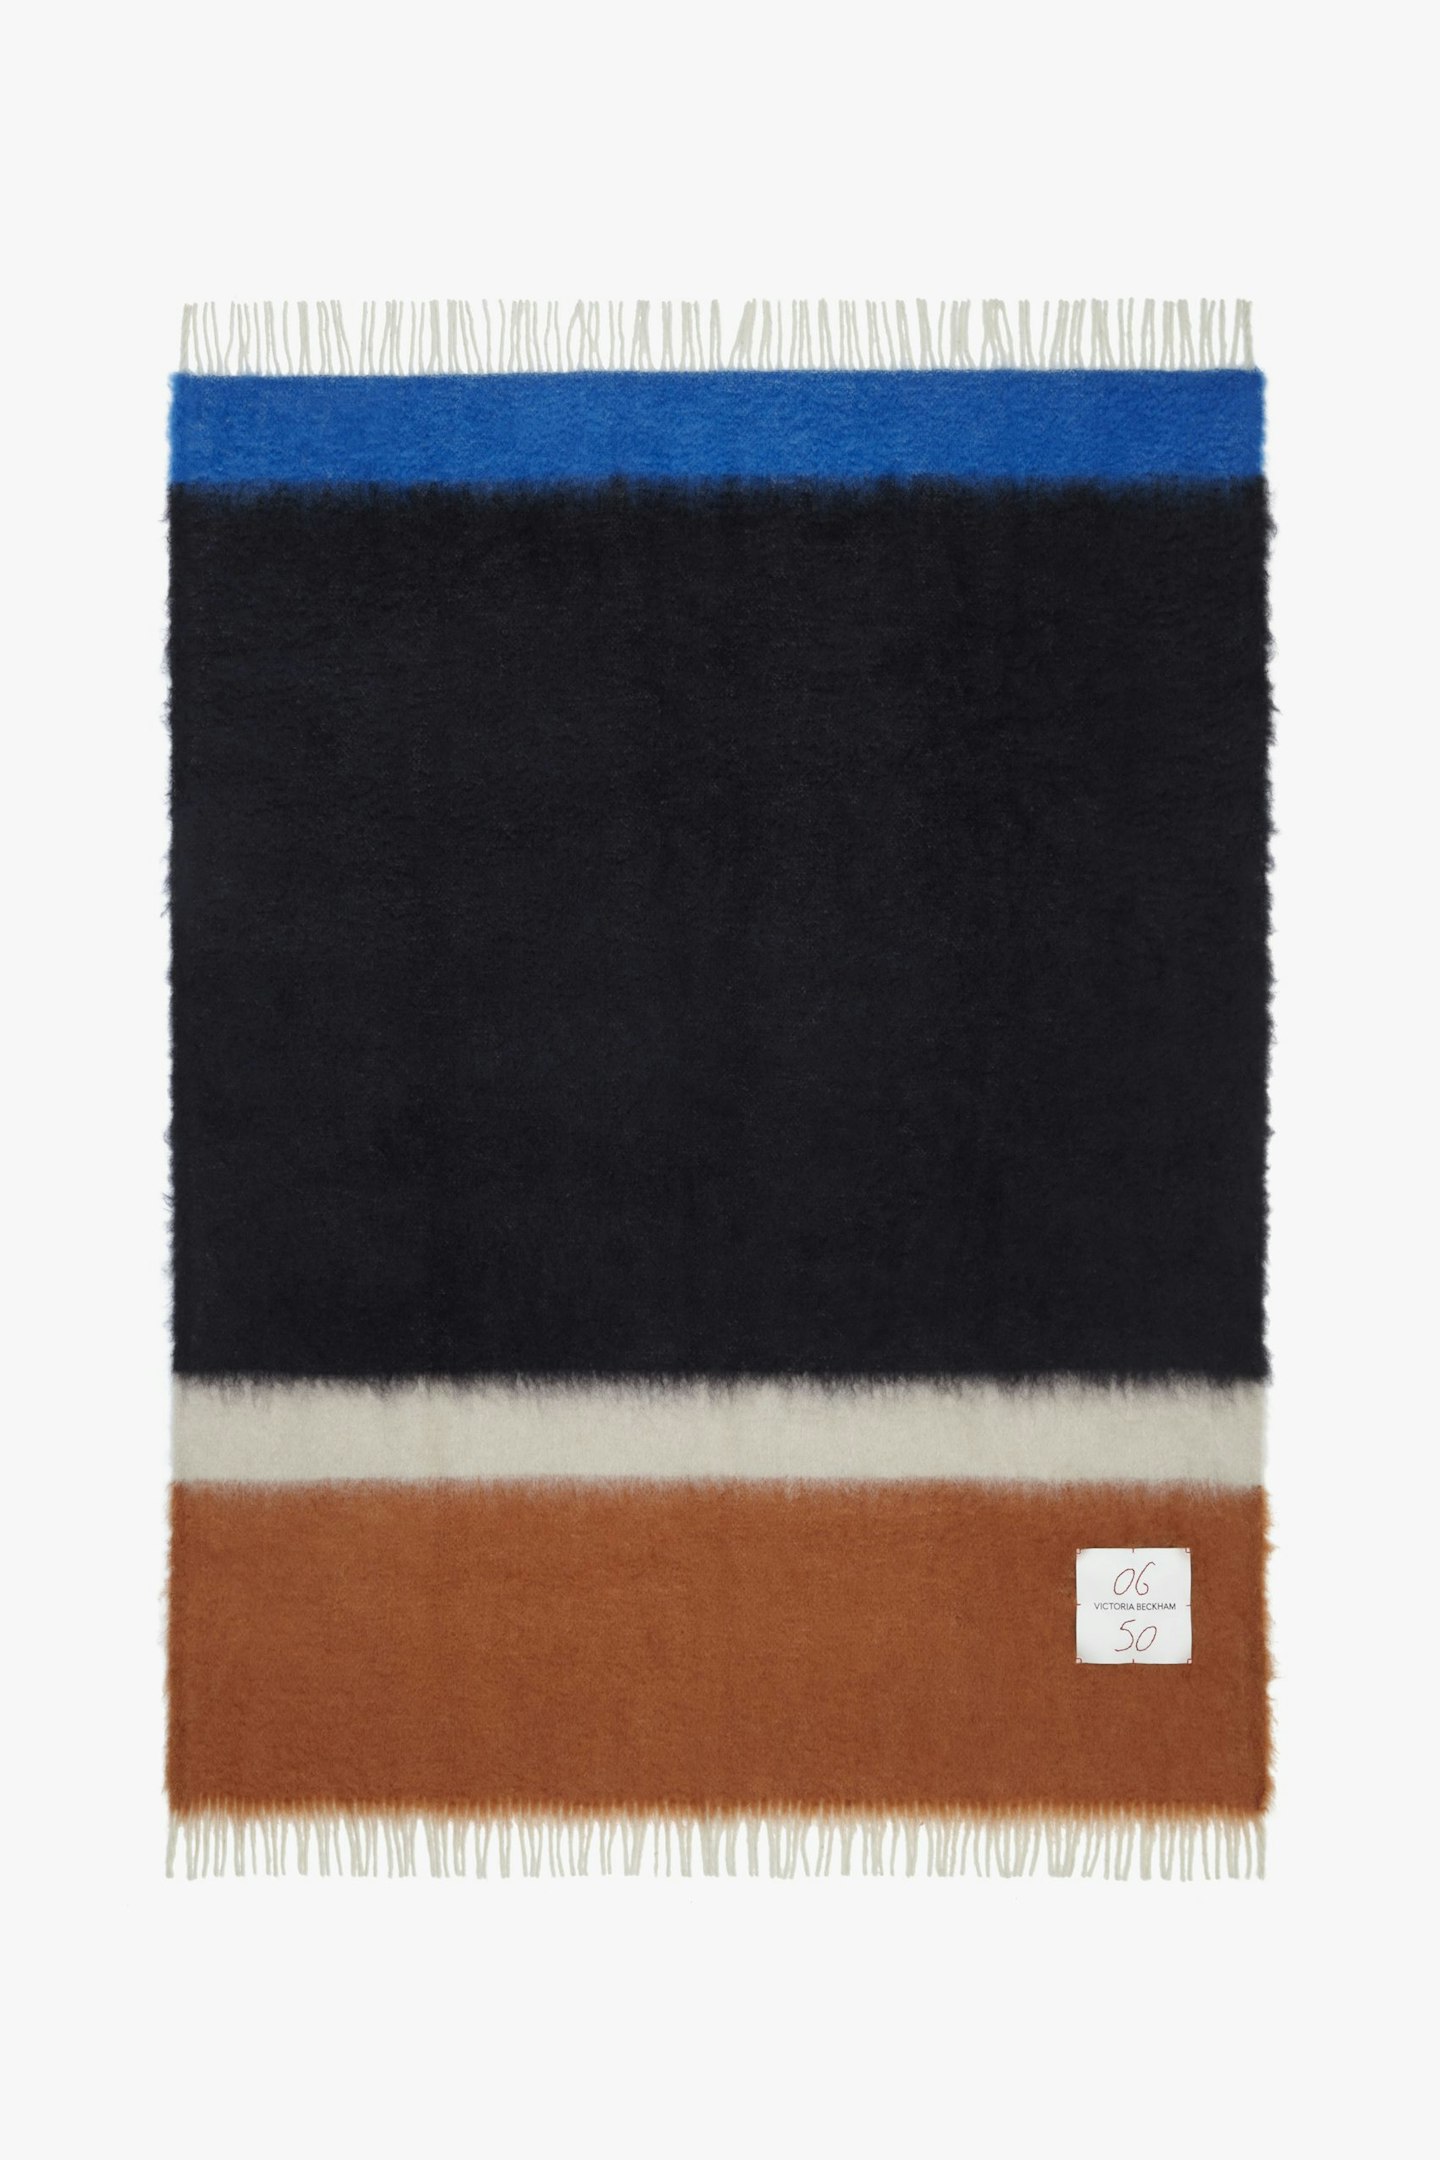 VB, Colour-Block Blanket In Blue-Black Multi, £350